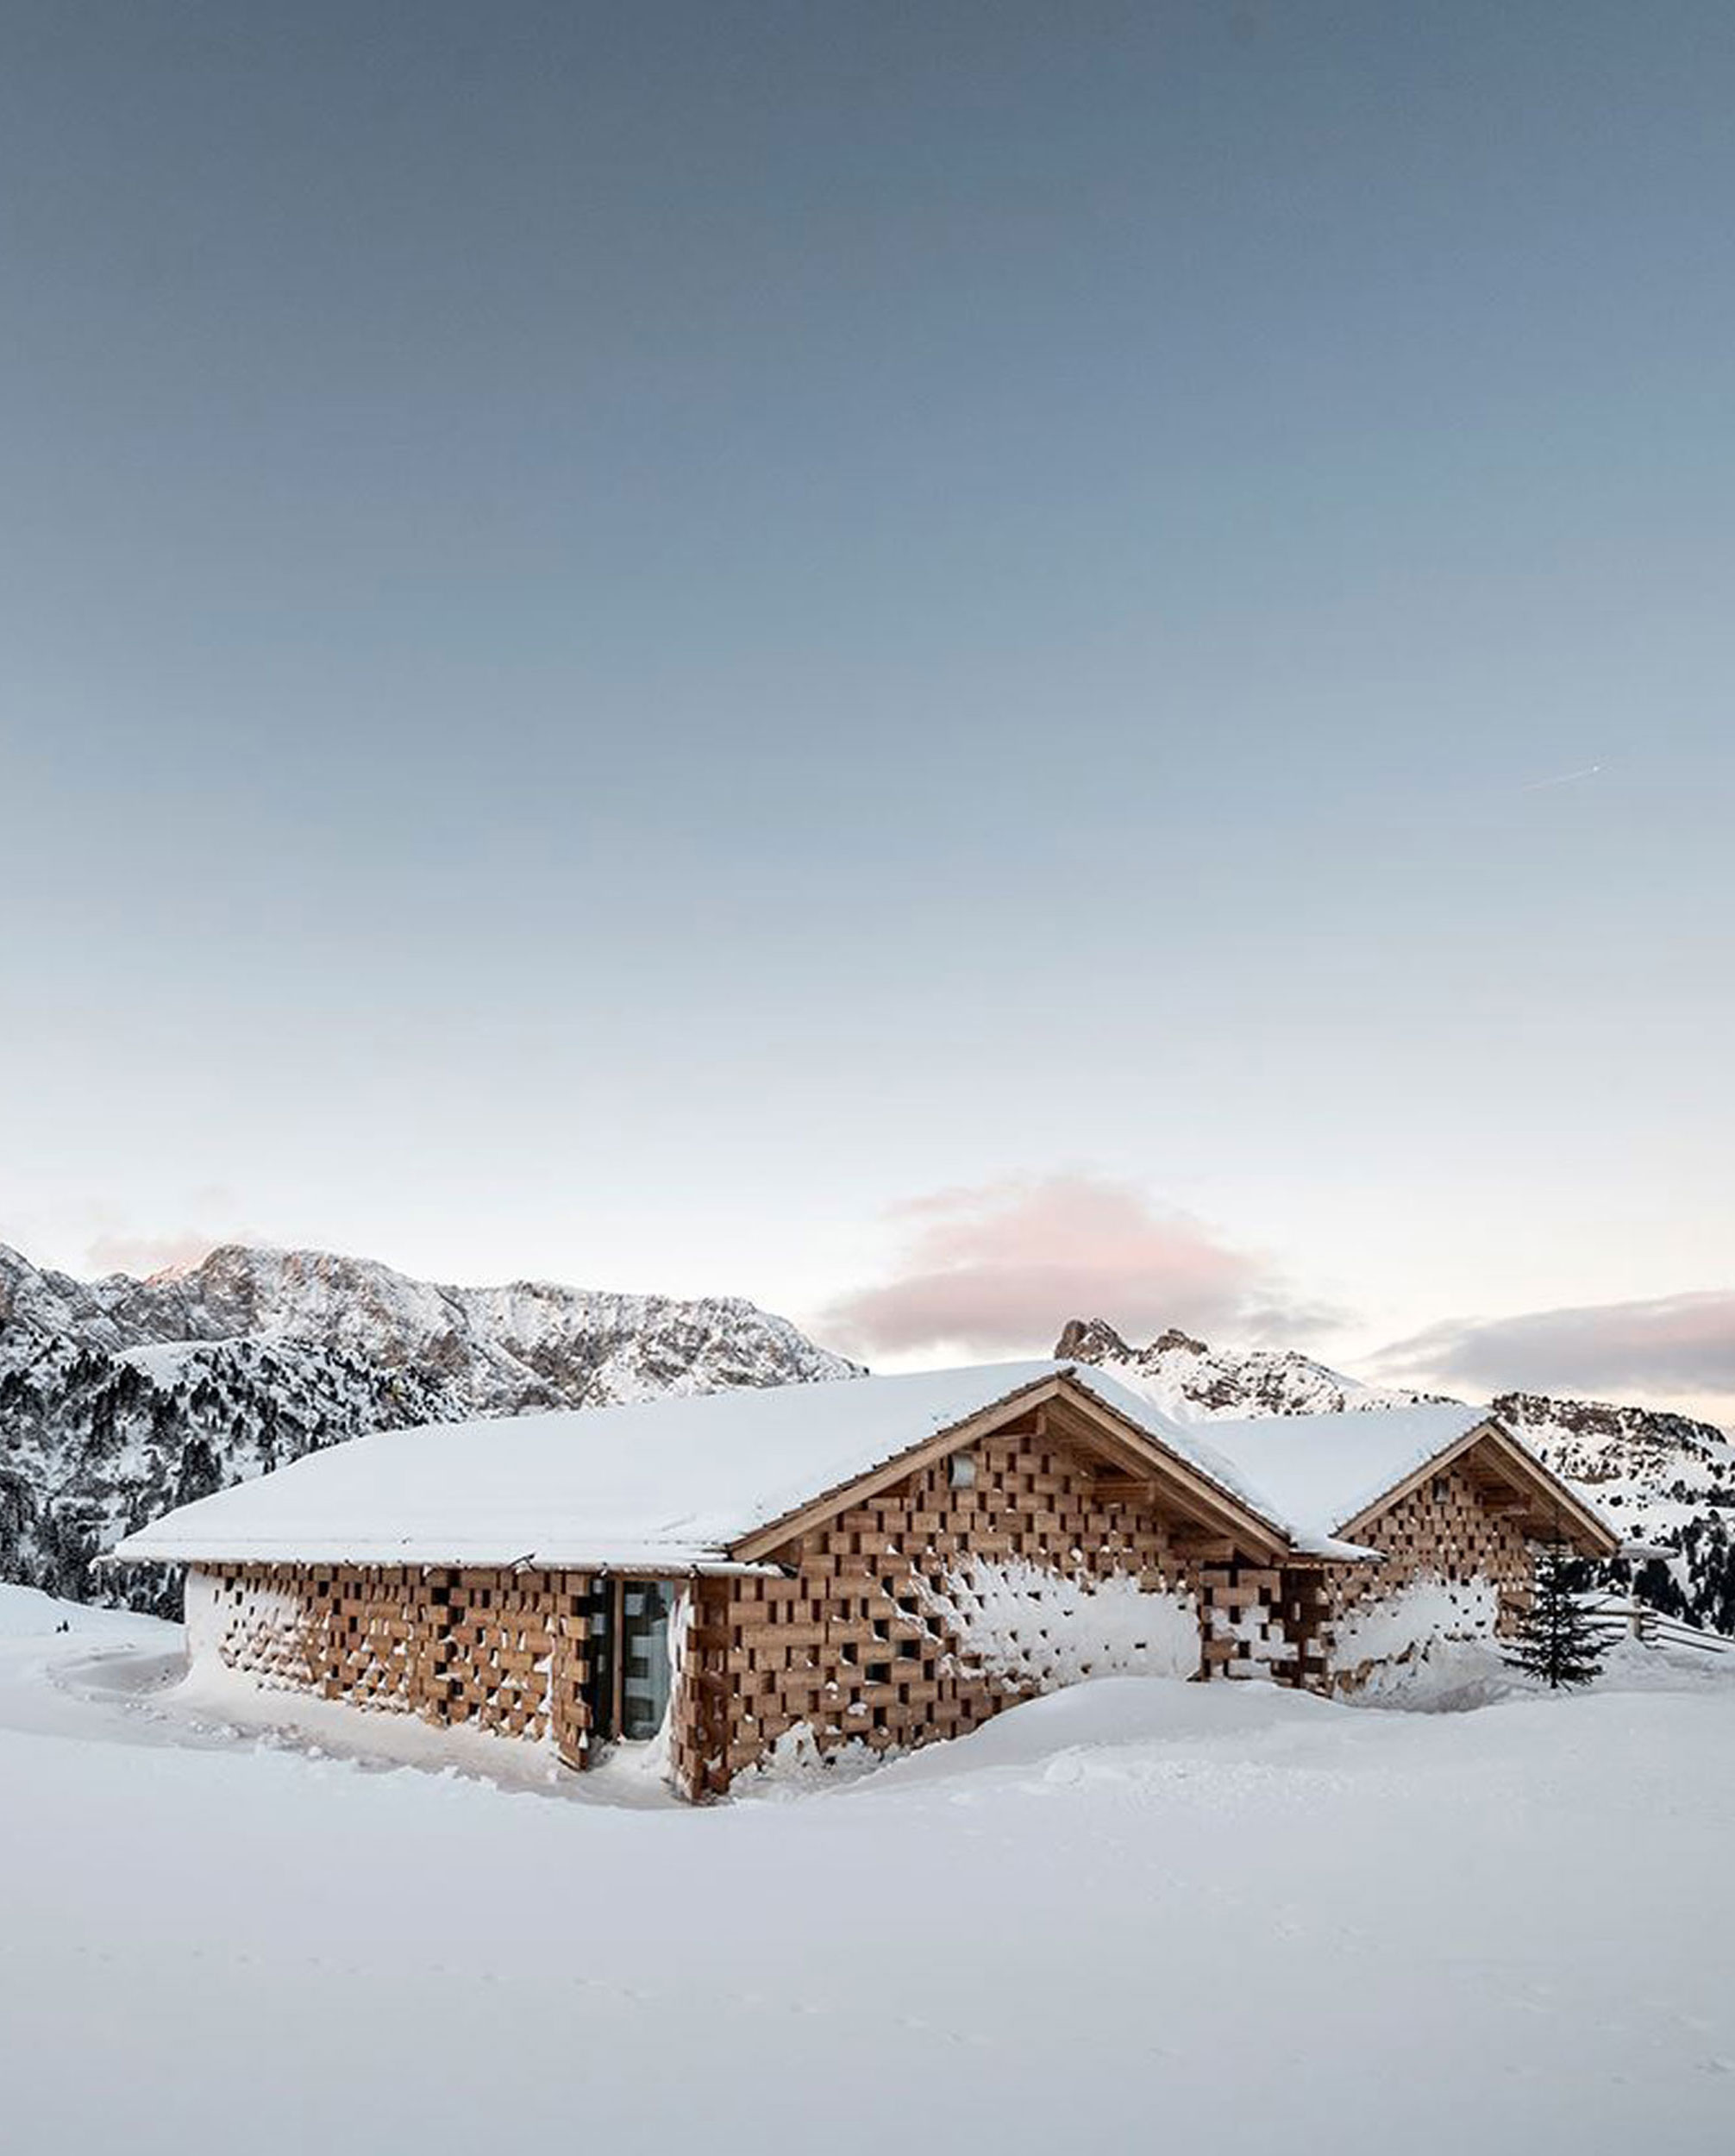 Winter retreats in the Seiser Alm - noa* | Arquitectura Viva